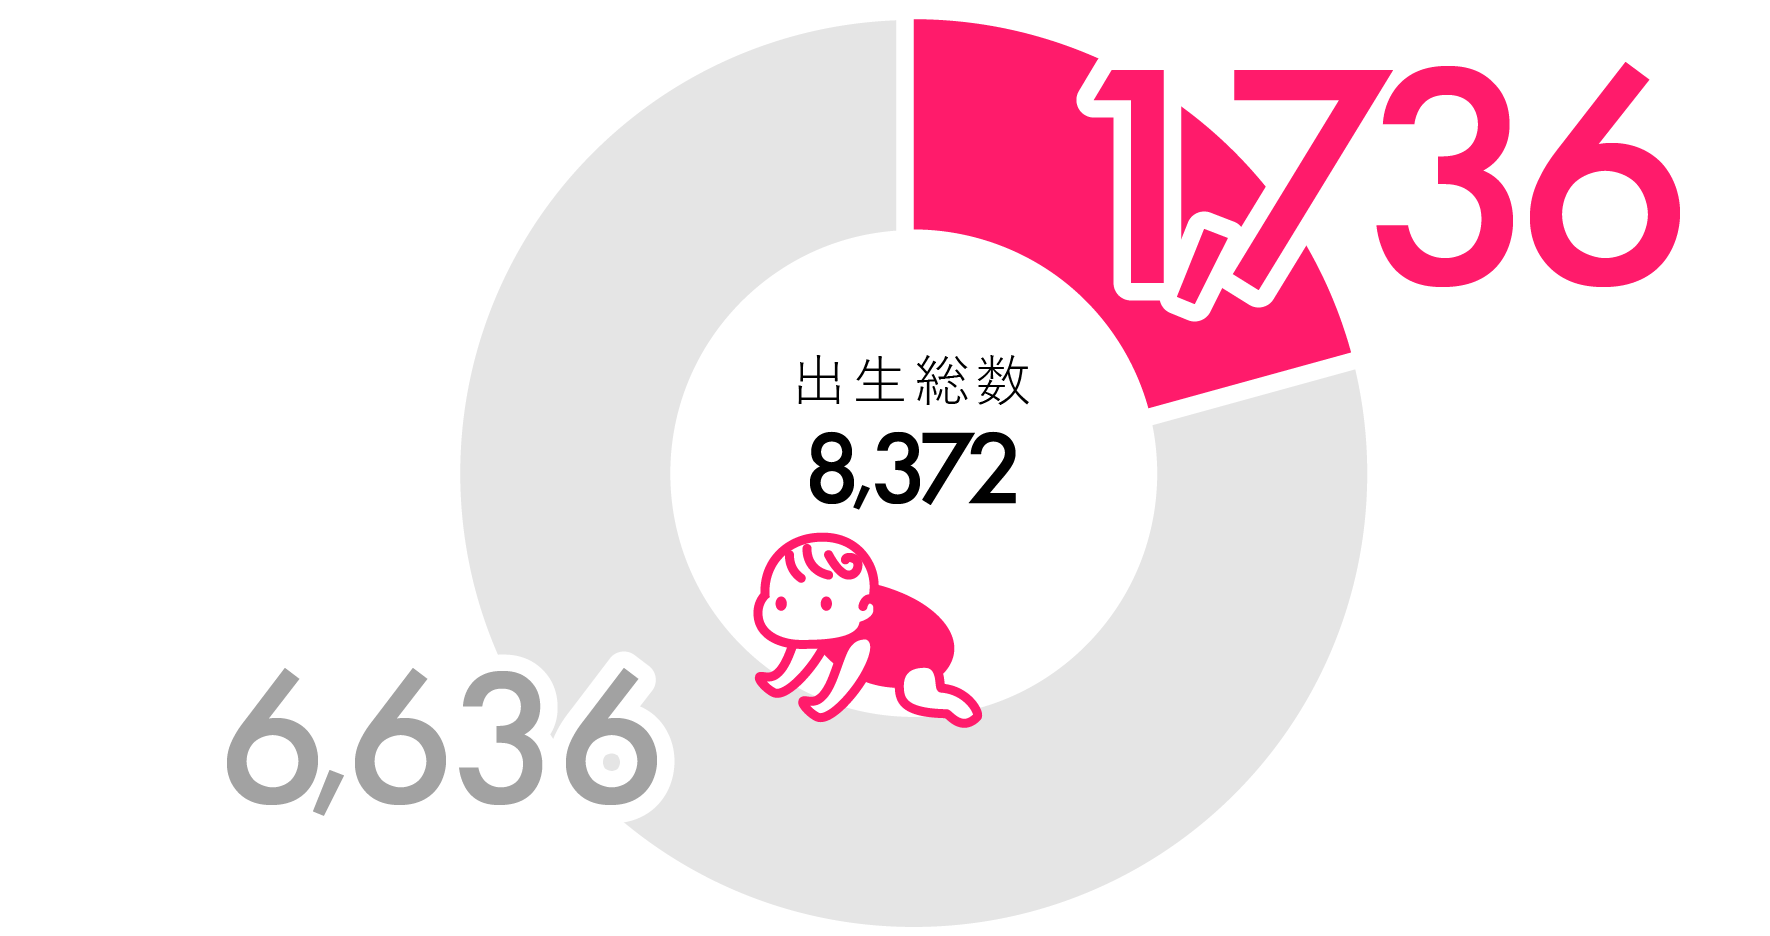 京都市内の年間出生数に占める割合